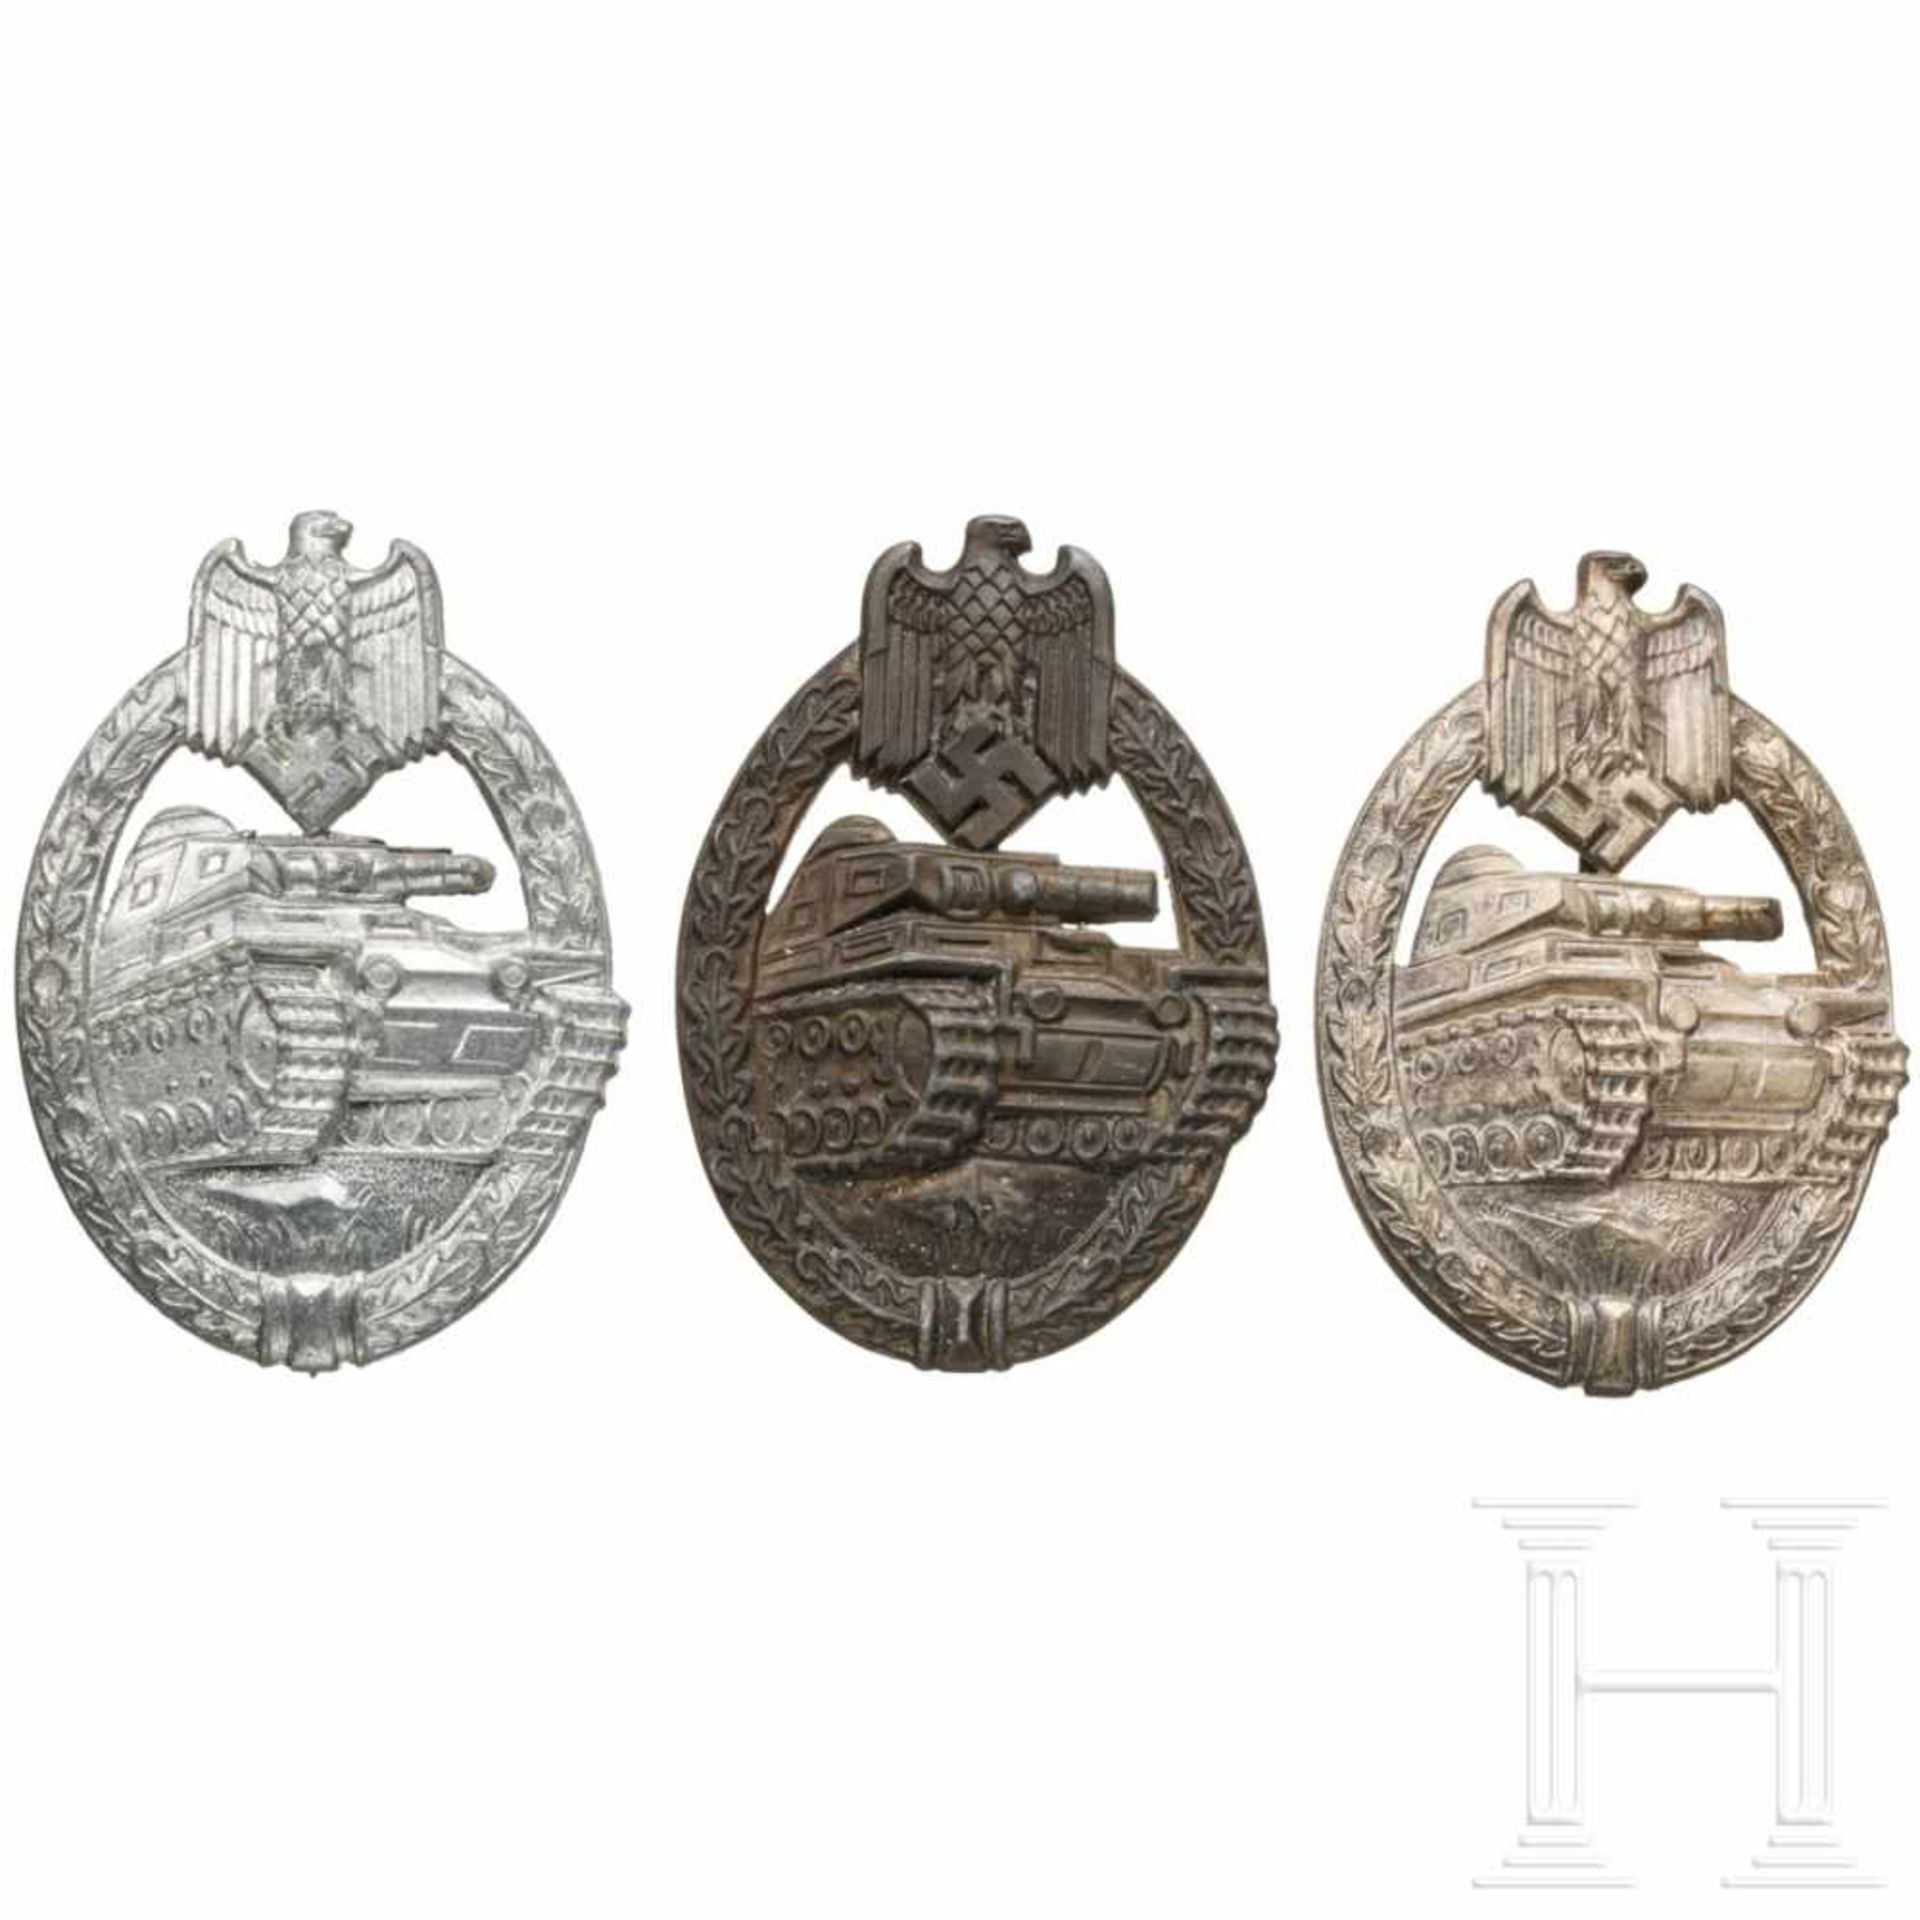 Drei Panzerkampfabzeichen in Silber